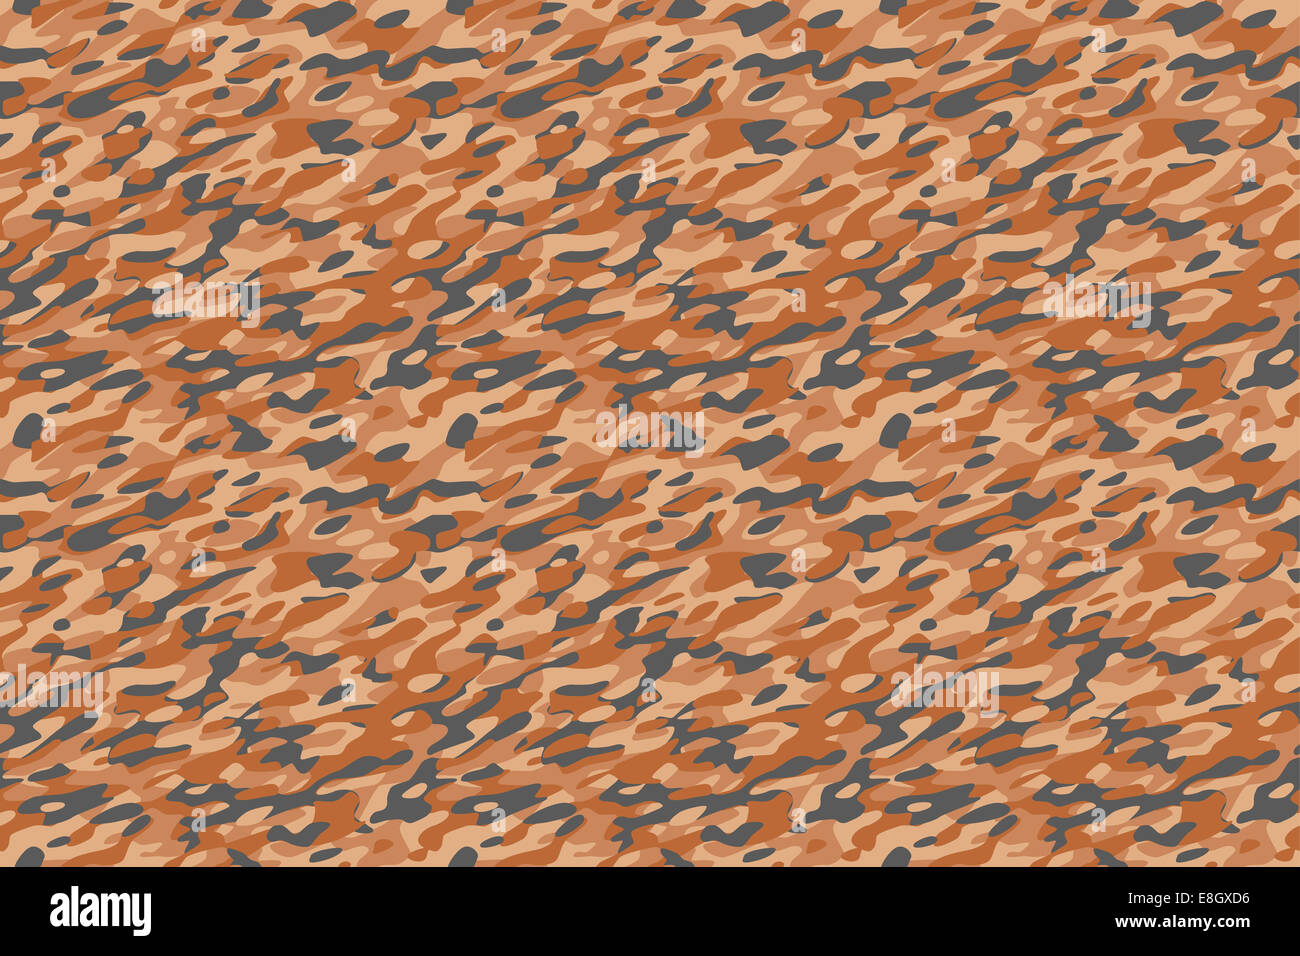 Camuflaje desierto fondo marrón - Desert brown militar de camuflaje patrón textil. Todos los lados encajan perfectamente juntos sin fisuras Foto de stock